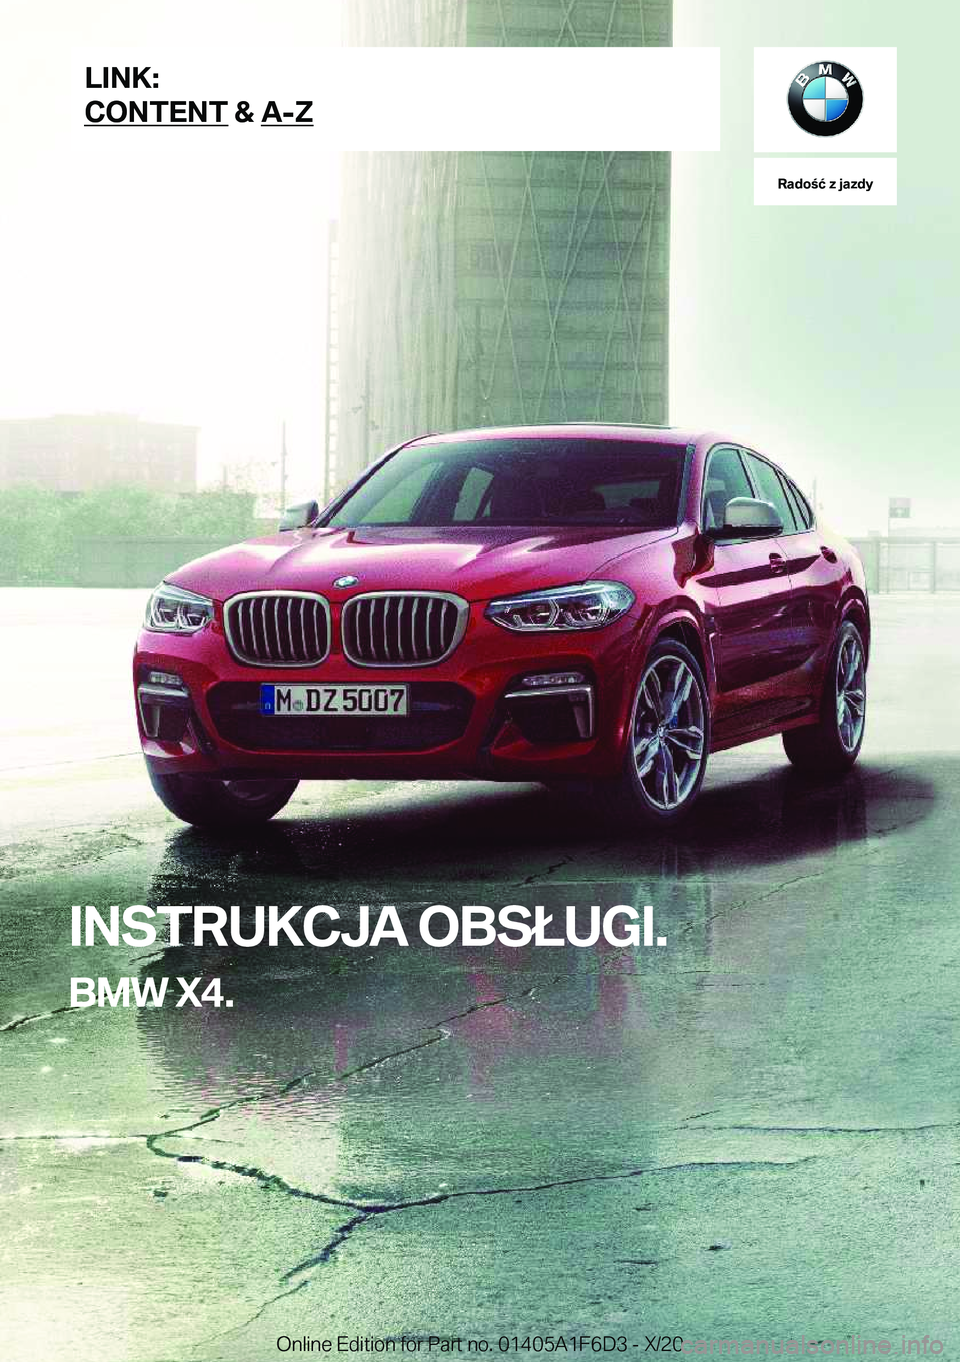 BMW X4 2021  Instrukcja obsługi (in Polish) �R�a�d�o�ć��z��j�a�z�d�y
�I�N�S�T�R�U�K�C�J�A��O�B�S�Ł�U�G�I�.
�B�M�W��X�4�.�L�I�N�K�:
�C�O�N�T�E�N�T��&��A�-�Z�O�n�l�i�n�e��E�d�i�t�i�o�n��f�o�r��P�a�r�t��n�o�.��0�1�4�0�5�A�1�F�6�D�3�